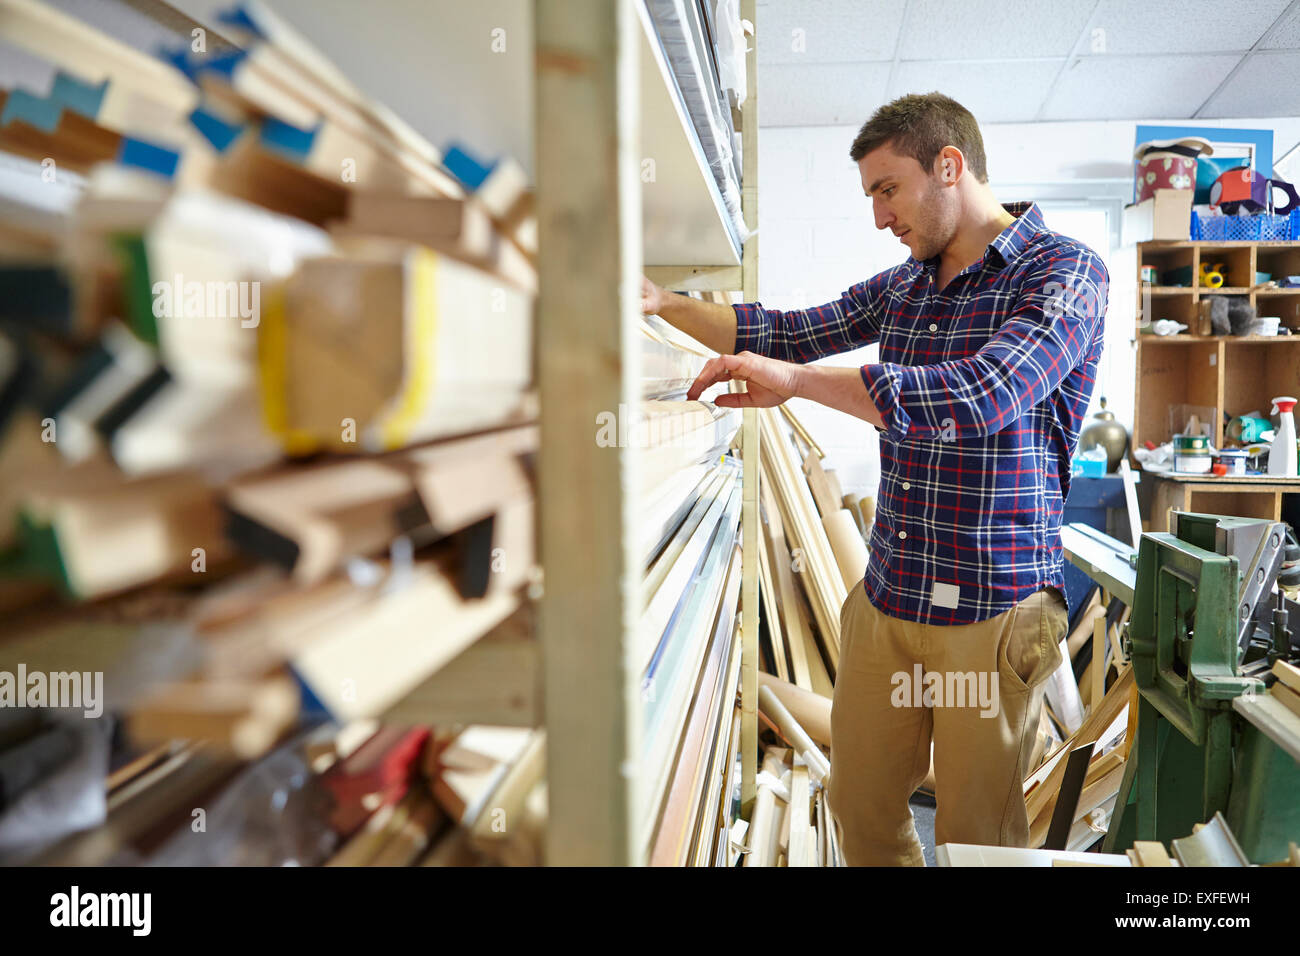 Mitad hombre adulto buscando stockroom estantes en marcos de imágenes taller Foto de stock